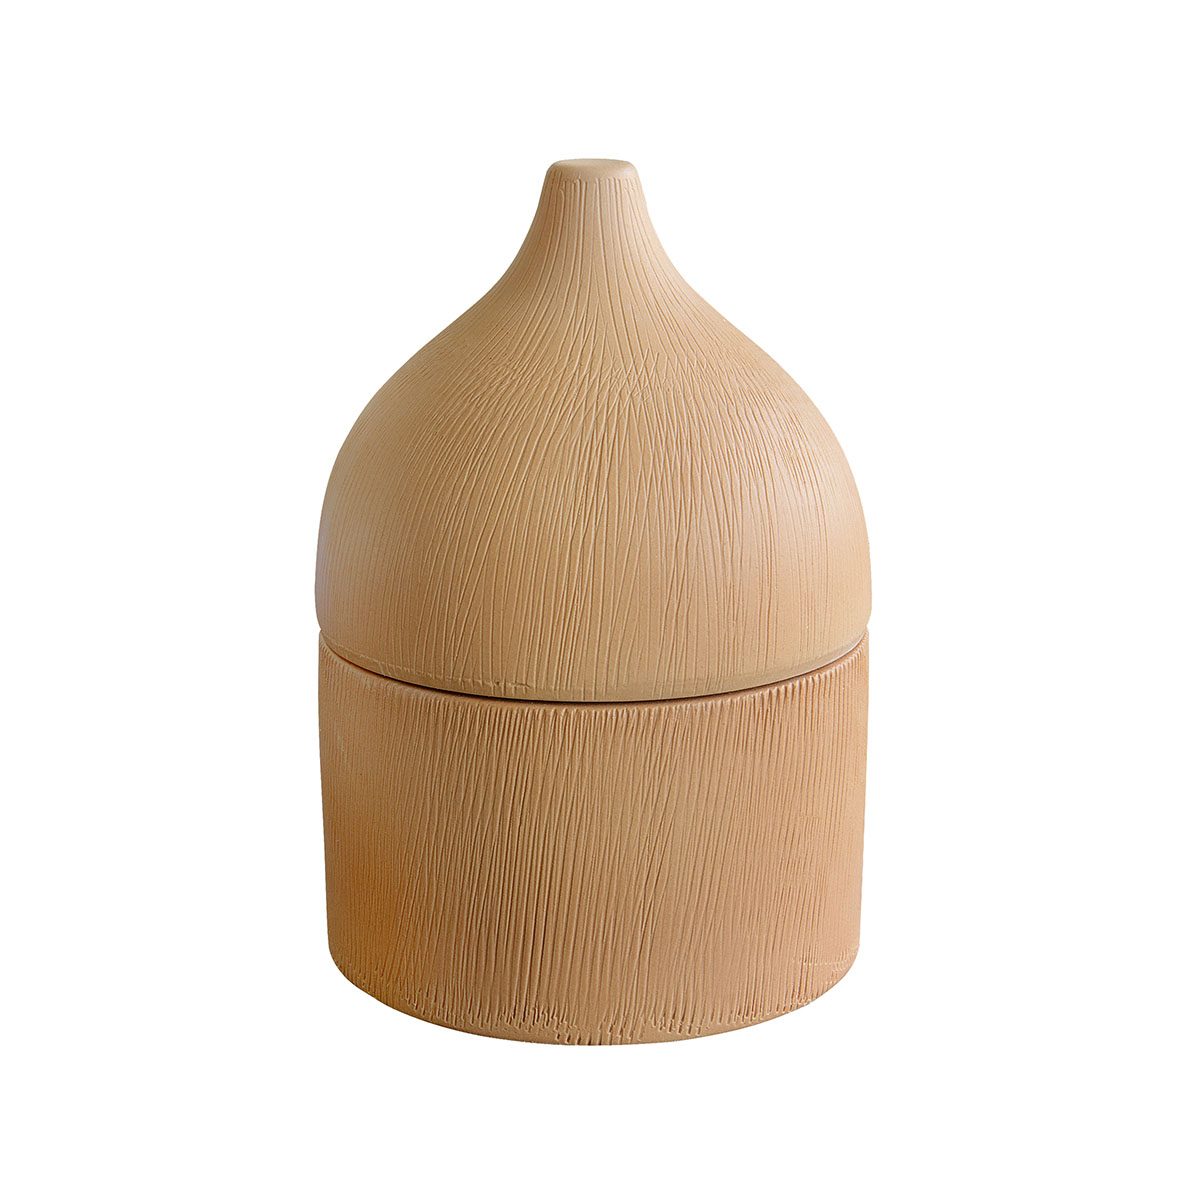 Billede af Rustic keramik krukke med låg - 14,5 cm